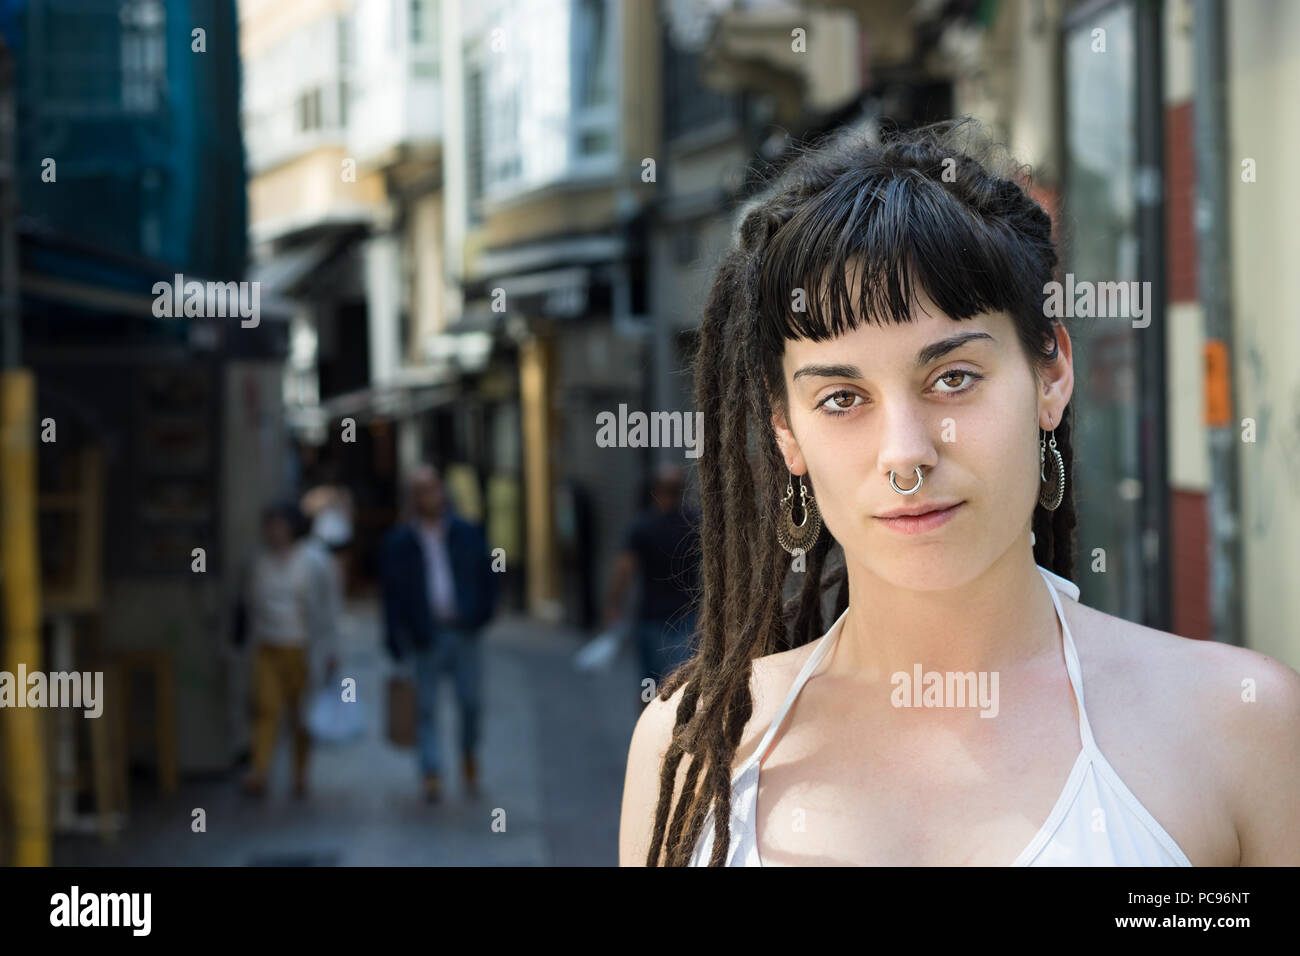 La Coruña, Spanien - Juli 13., 2018: Porträt einer jungen Frau auf der Straße mit Rastafari, Dreadlocks und ein Piercing in der Nase. Stockfoto